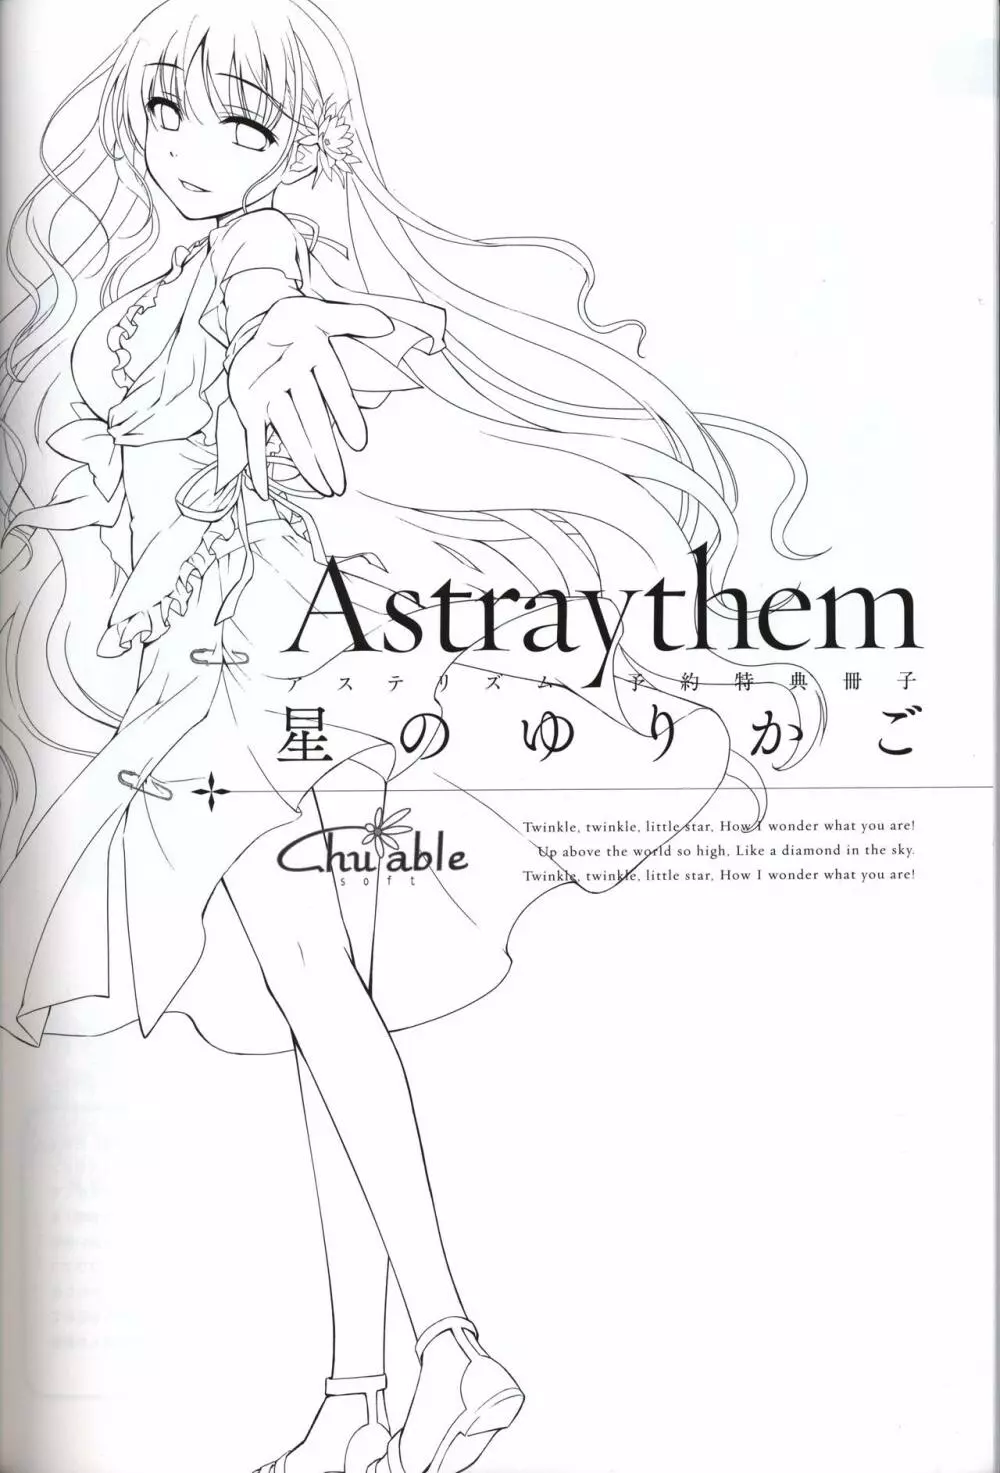 星のゆりかご アステリズム -Astraythem-予約特典冊子 2ページ